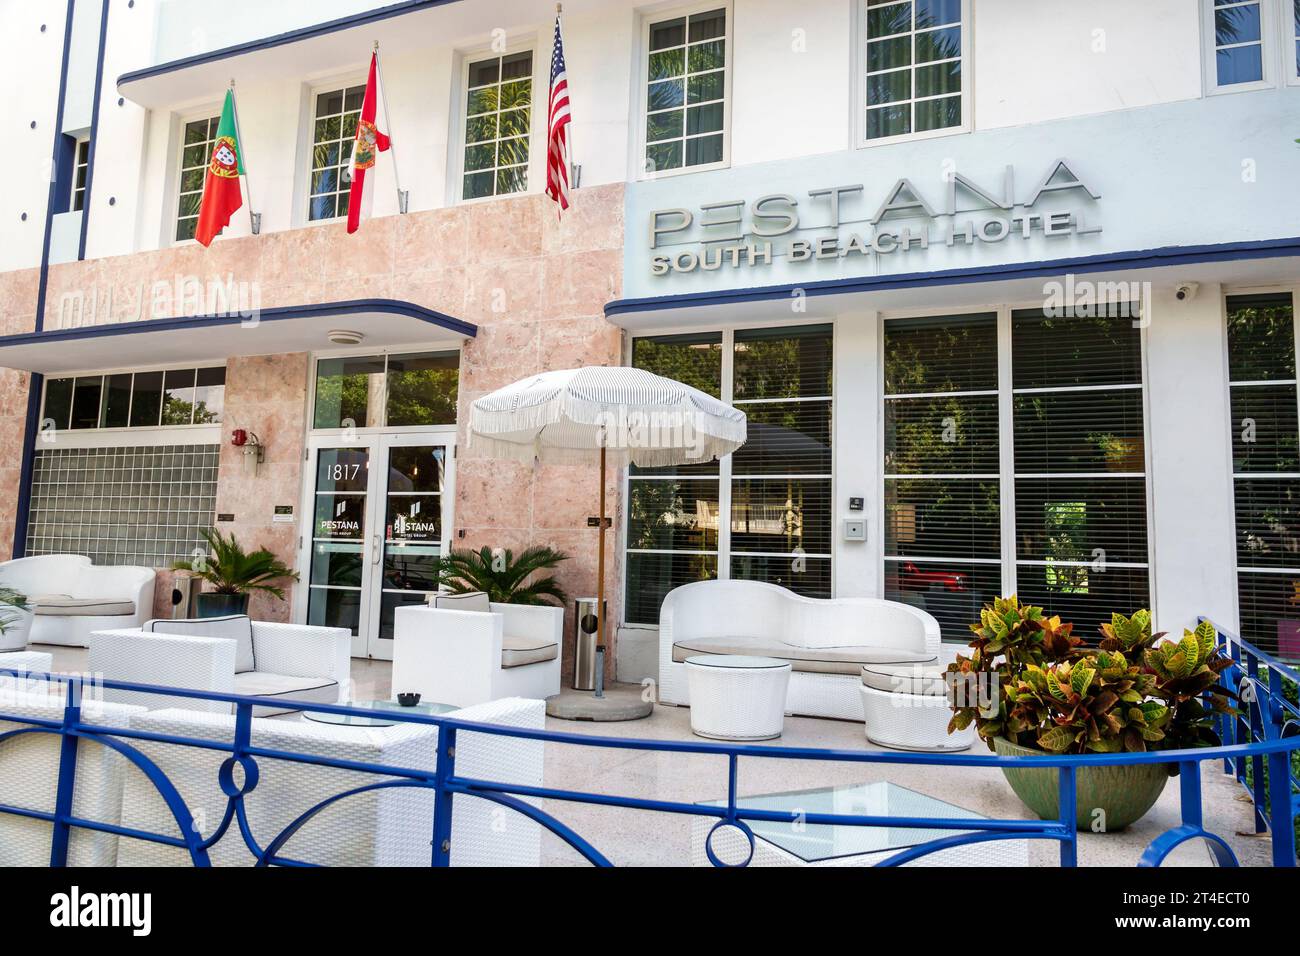 Miami Beach Florida, Außenfassade, Gebäude Vordereingang Hotel, Pestana South Beach Hotel Schild, Hotels Motels Unternehmen Stockfoto